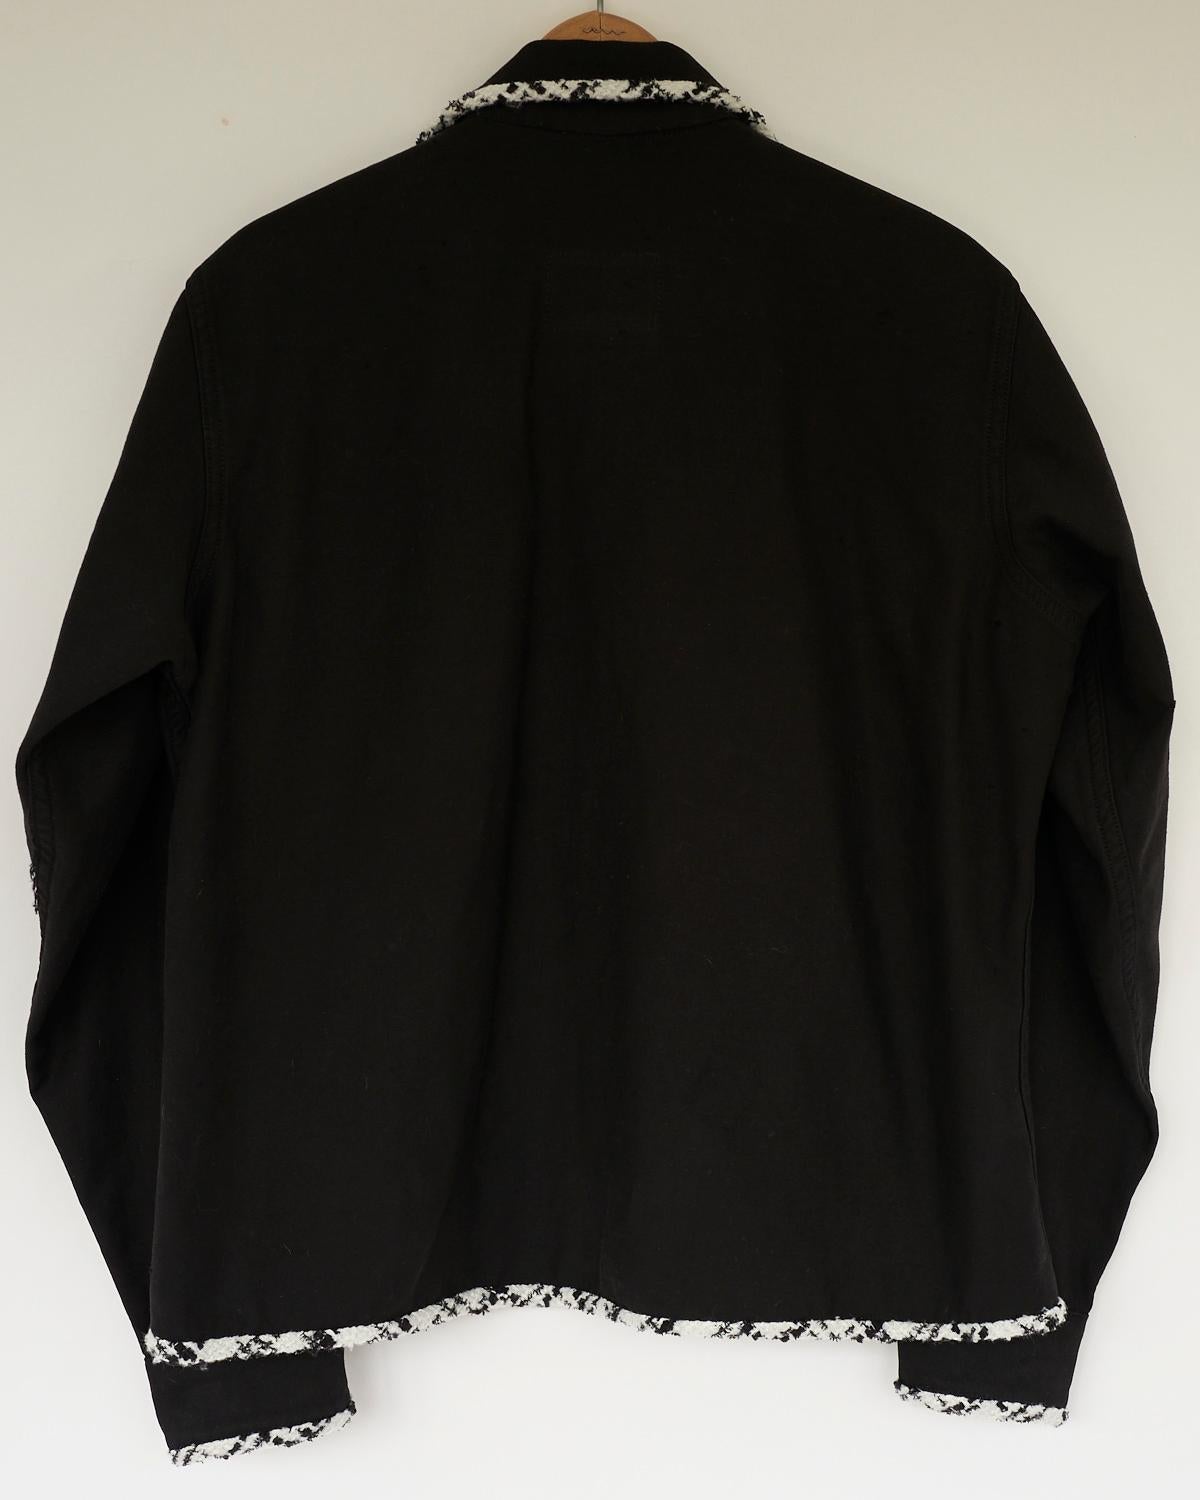 Embellished Black Jacket Original Designer Black White Lurex Tweed J Dauphin 1